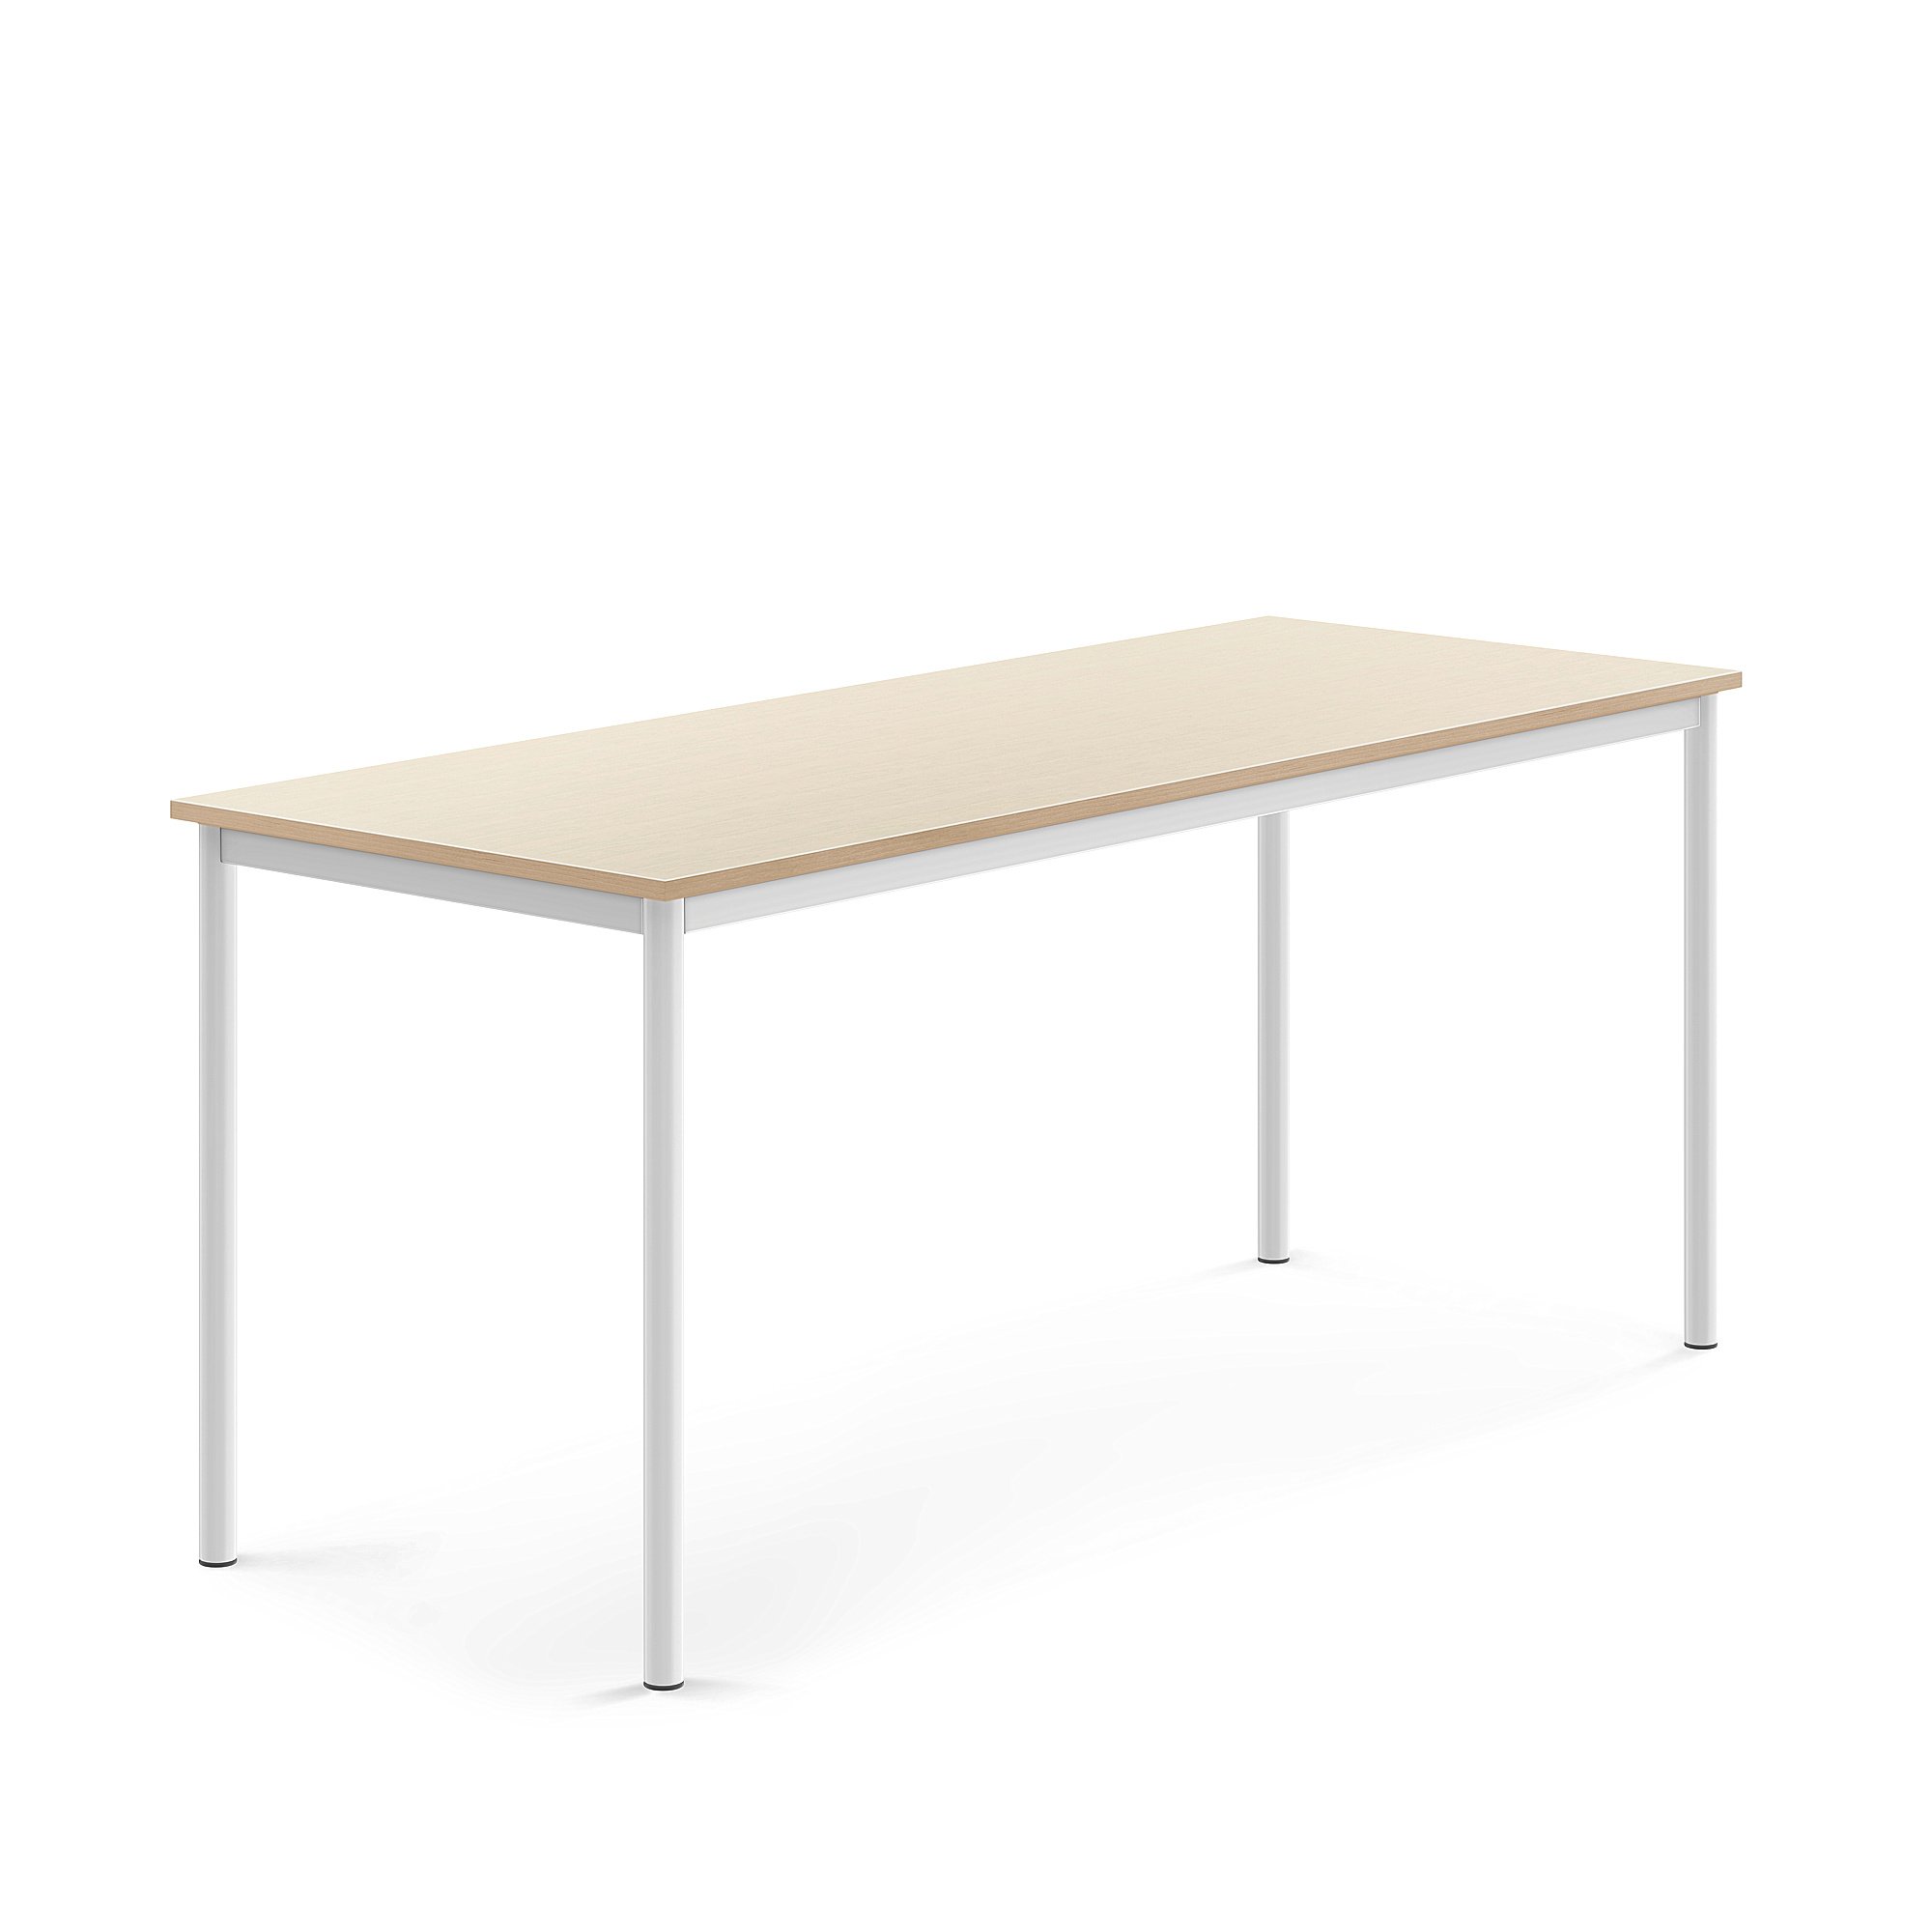 Stůl SONITUS, 1800x700x760 mm, bílé nohy, HPL deska tlumící hluk, bříza